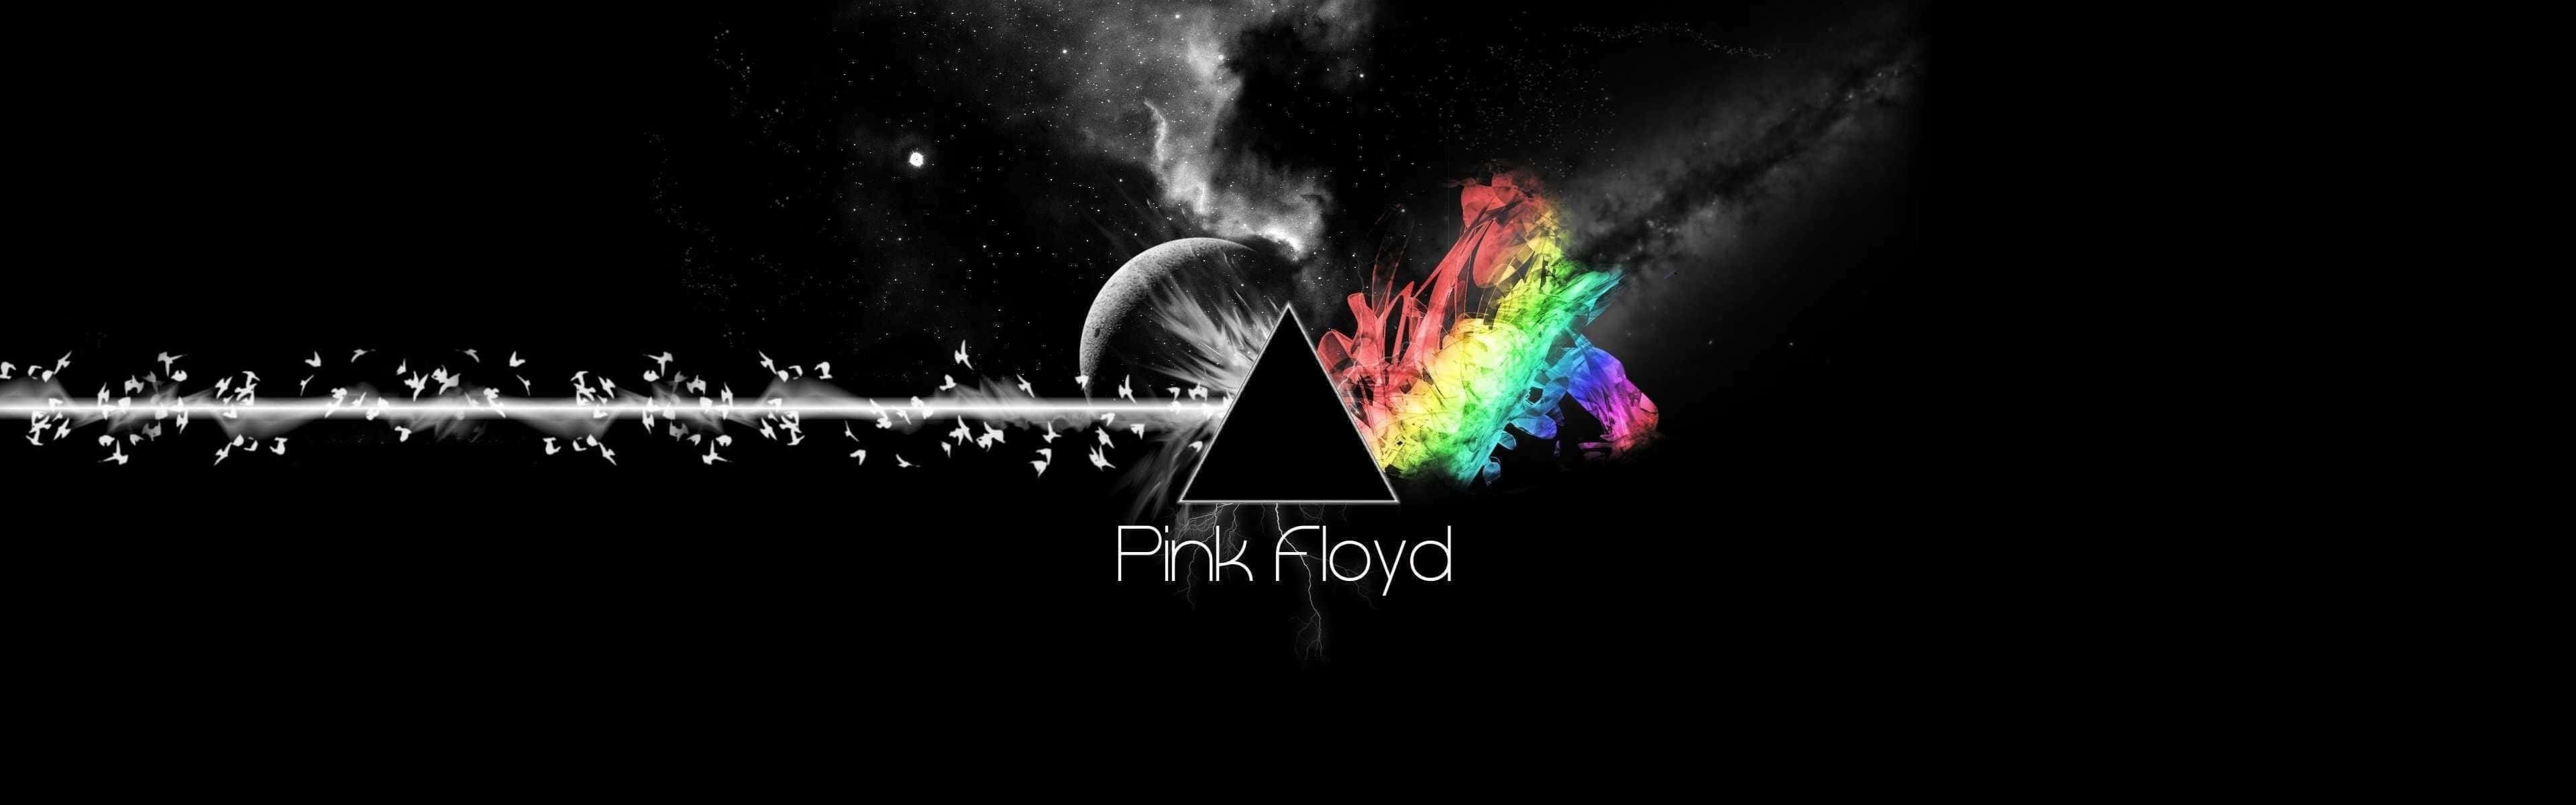 Pinkfloyd Hintergrundbilder, Pink Floyd Hintergrundbilder, Pink Floyd Hintergrundbilder Wallpaper